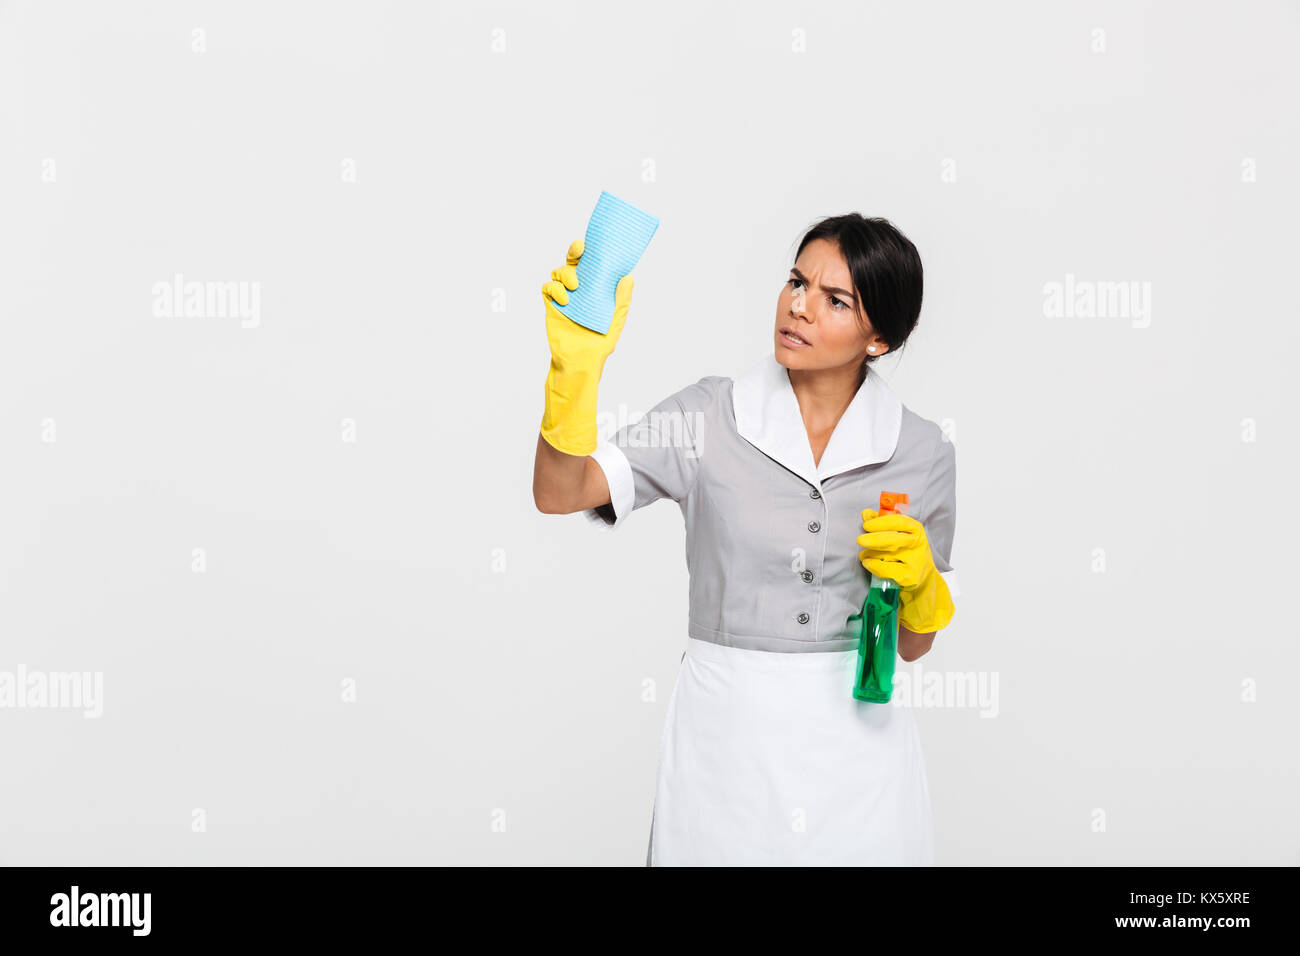 Junge konzentriert Mädchen in Uniform Reinigung Fenster mit der rag auf weißem Hintergrund Stockfoto